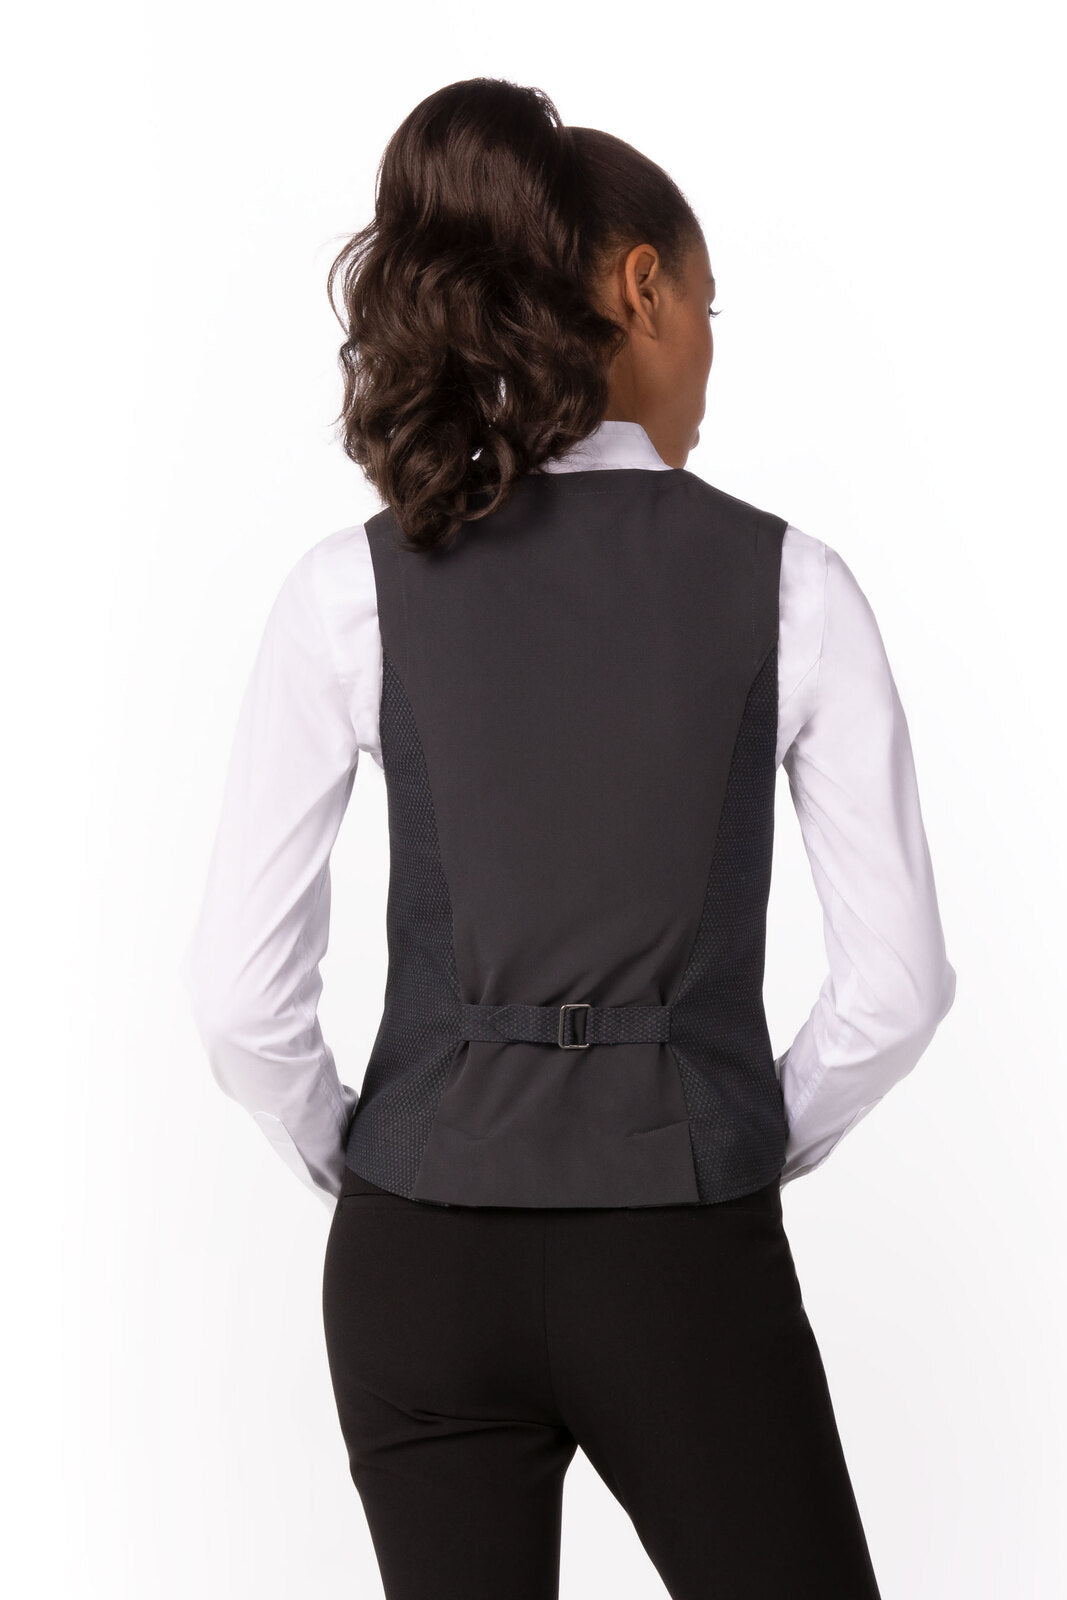 Chef Works - Women's Bridge Vest